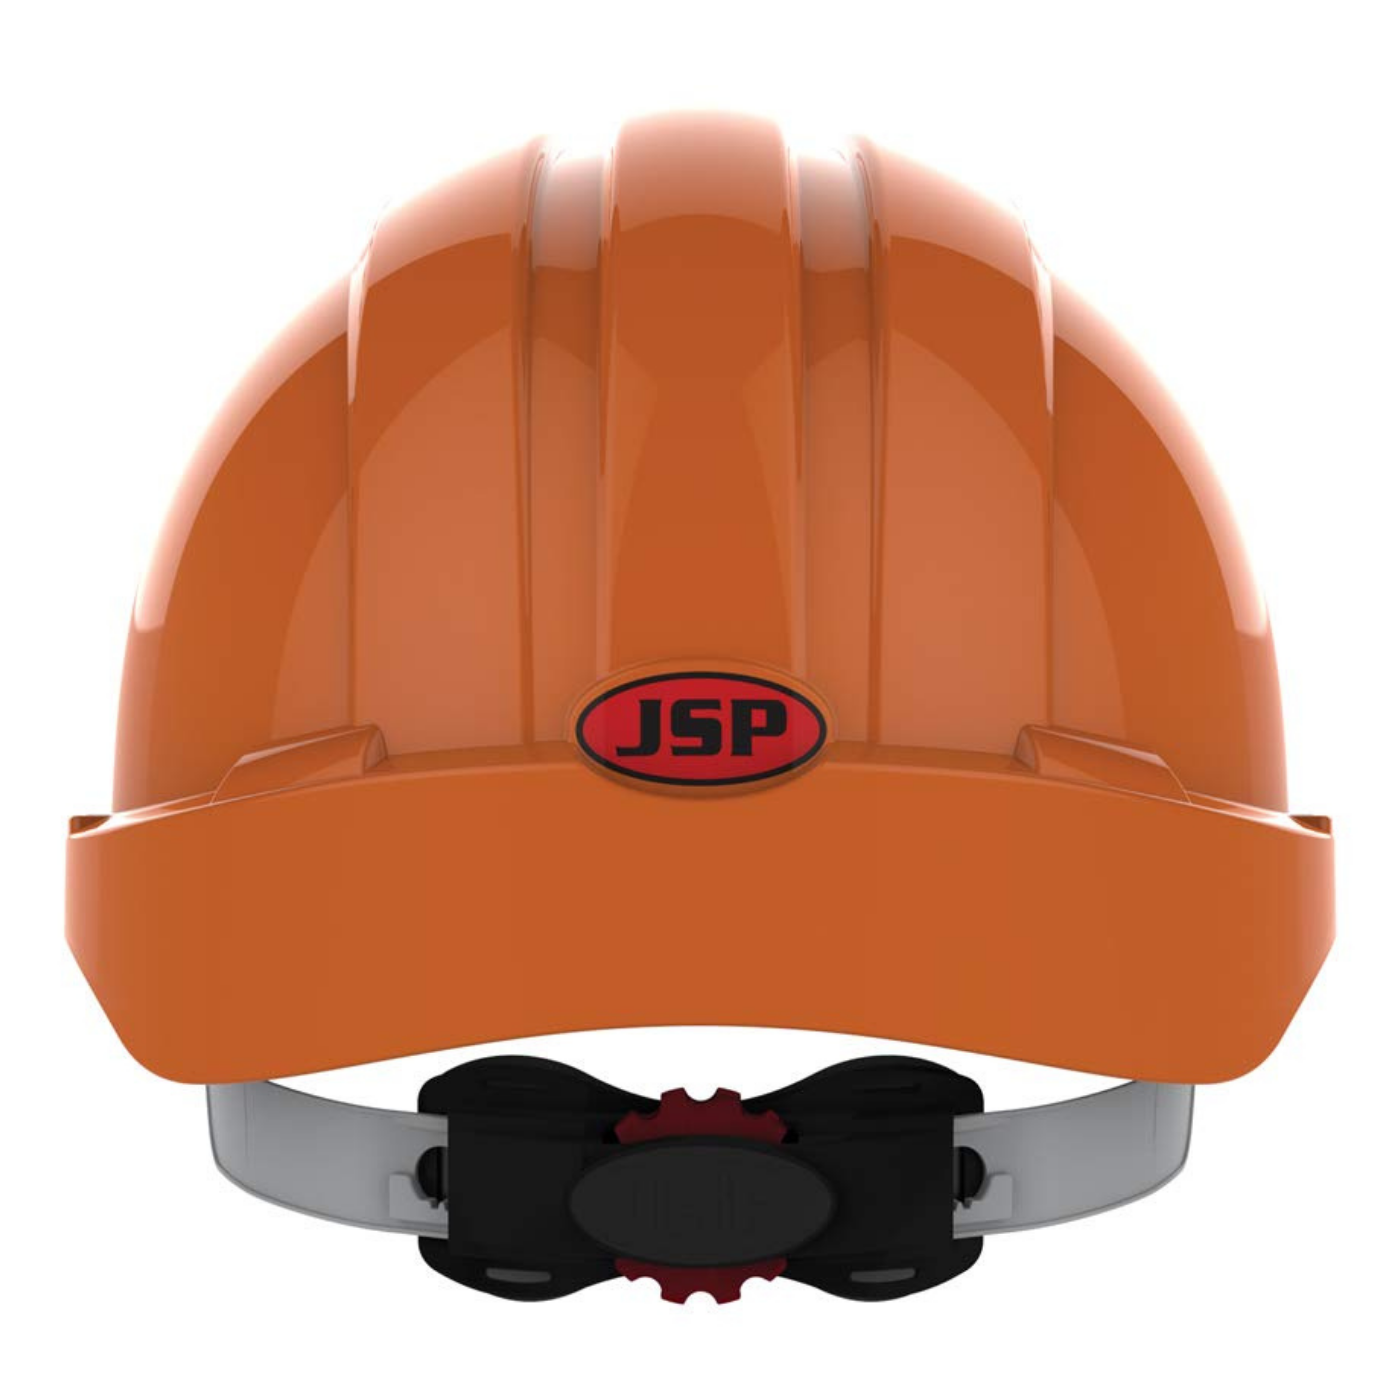 Kask ochronny JSP – pomarańczowy, wentylowany, średni daszek, regulacja pokrętłem AJF170-000-800 EVO3